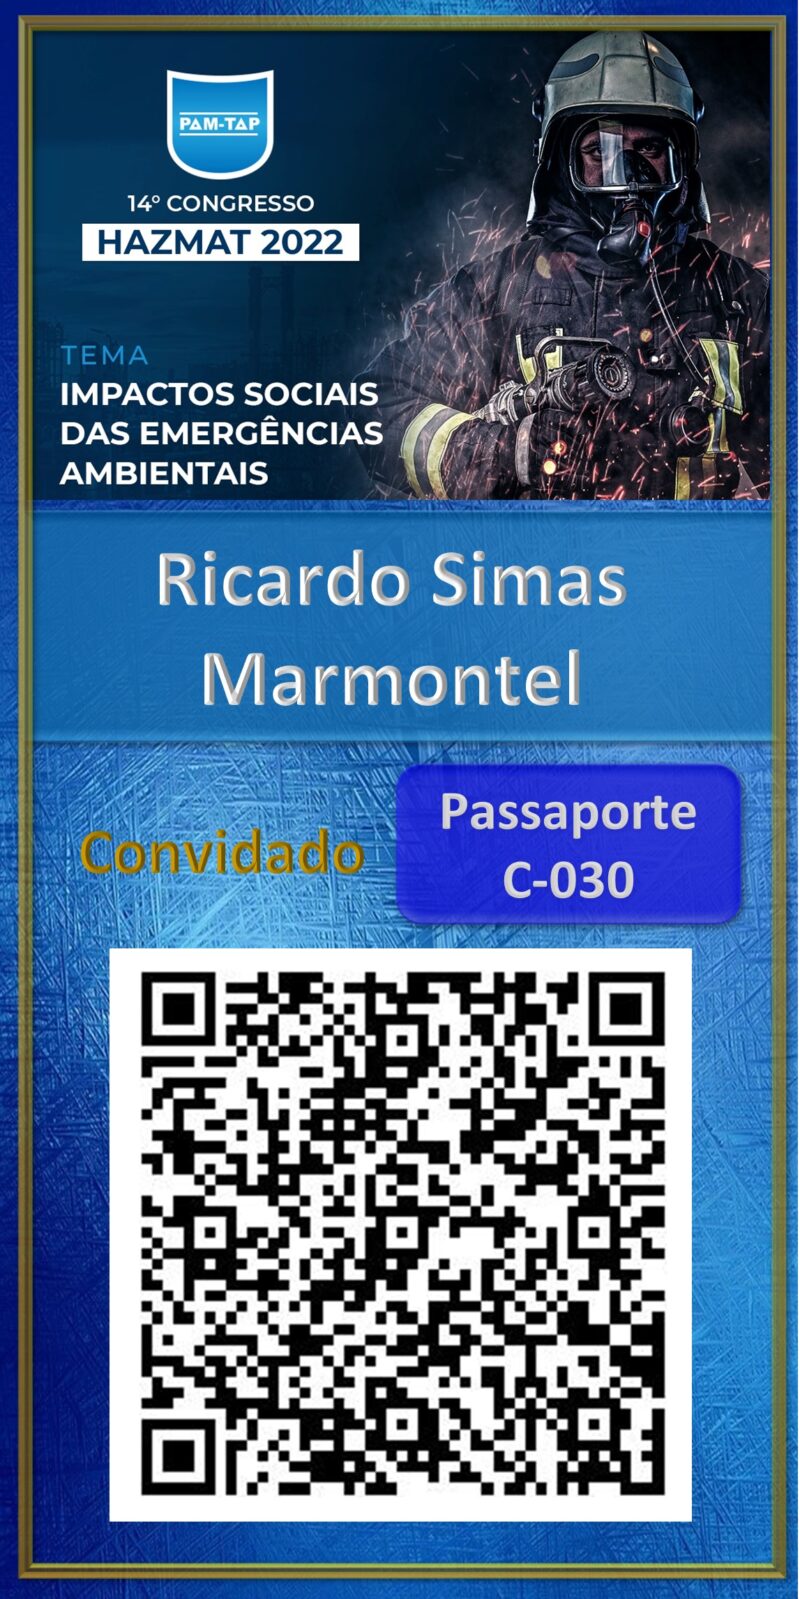 Ricardo Simas Marmontel-Hazmat 2022-Empresa